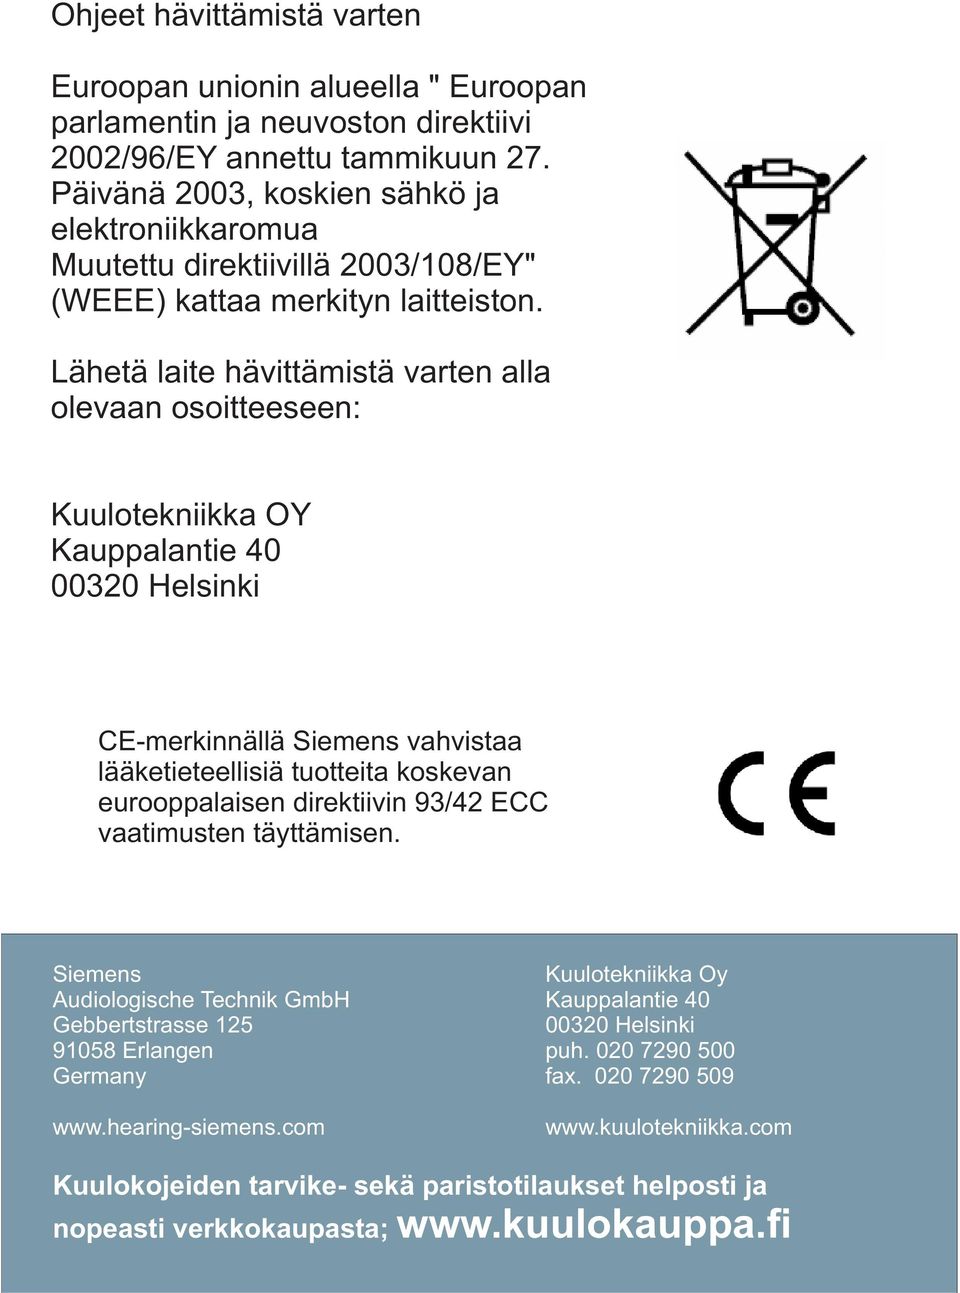 Lähetä laite hävittämistä varten alla olevaan osoitteeseen: Kuulotekniikka OY Kauppalantie 40 00320 Helsinki CE-merkinnällä Siemens vahvistaa lääketieteellisiä tuotteita koskevan eurooppalaisen